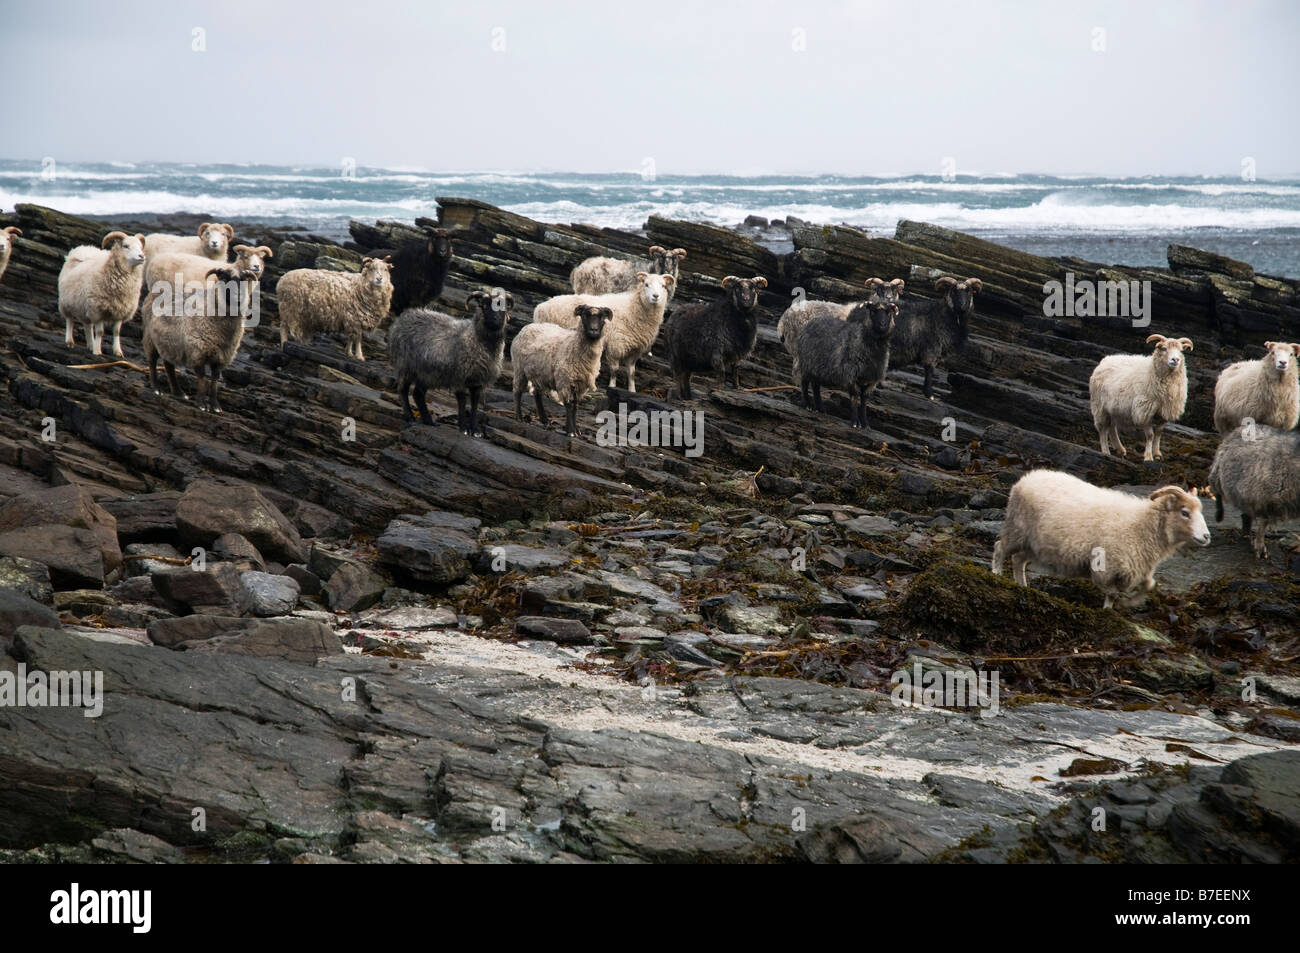 dh Garso Wick NORTH RONALDSAY ORKNEY Seaweed comiendo ovejas rocosas bandada de la costa Foto de stock